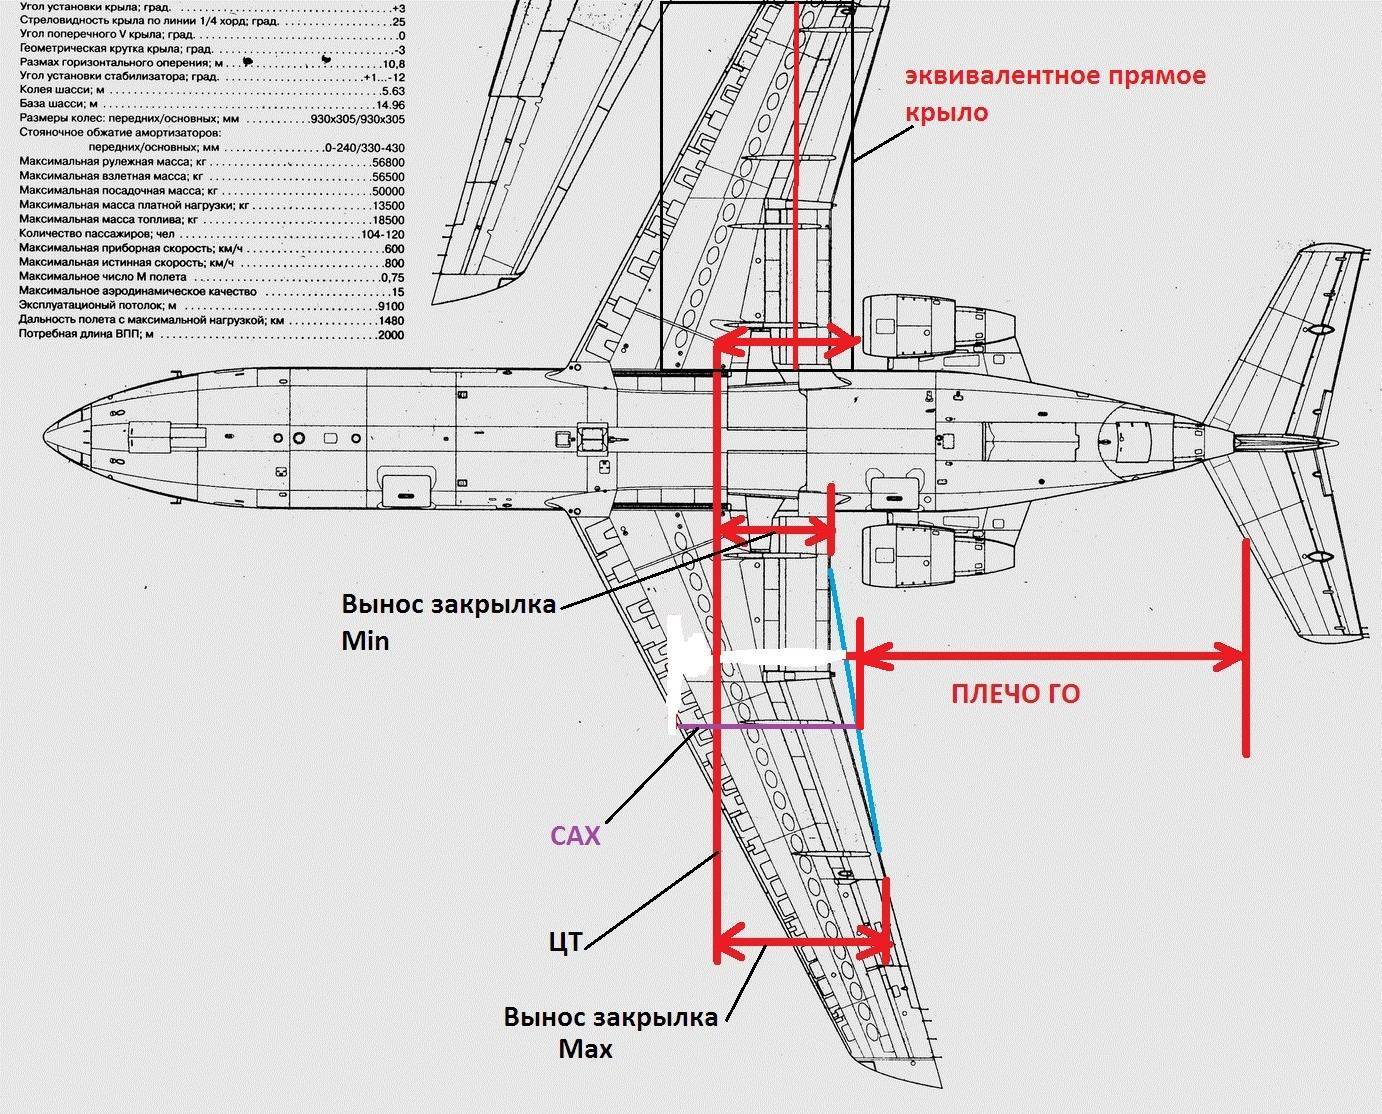 Самолёт як 40: назначение, лётно - технические характеристики, конструкция, история создания, аэродинамика